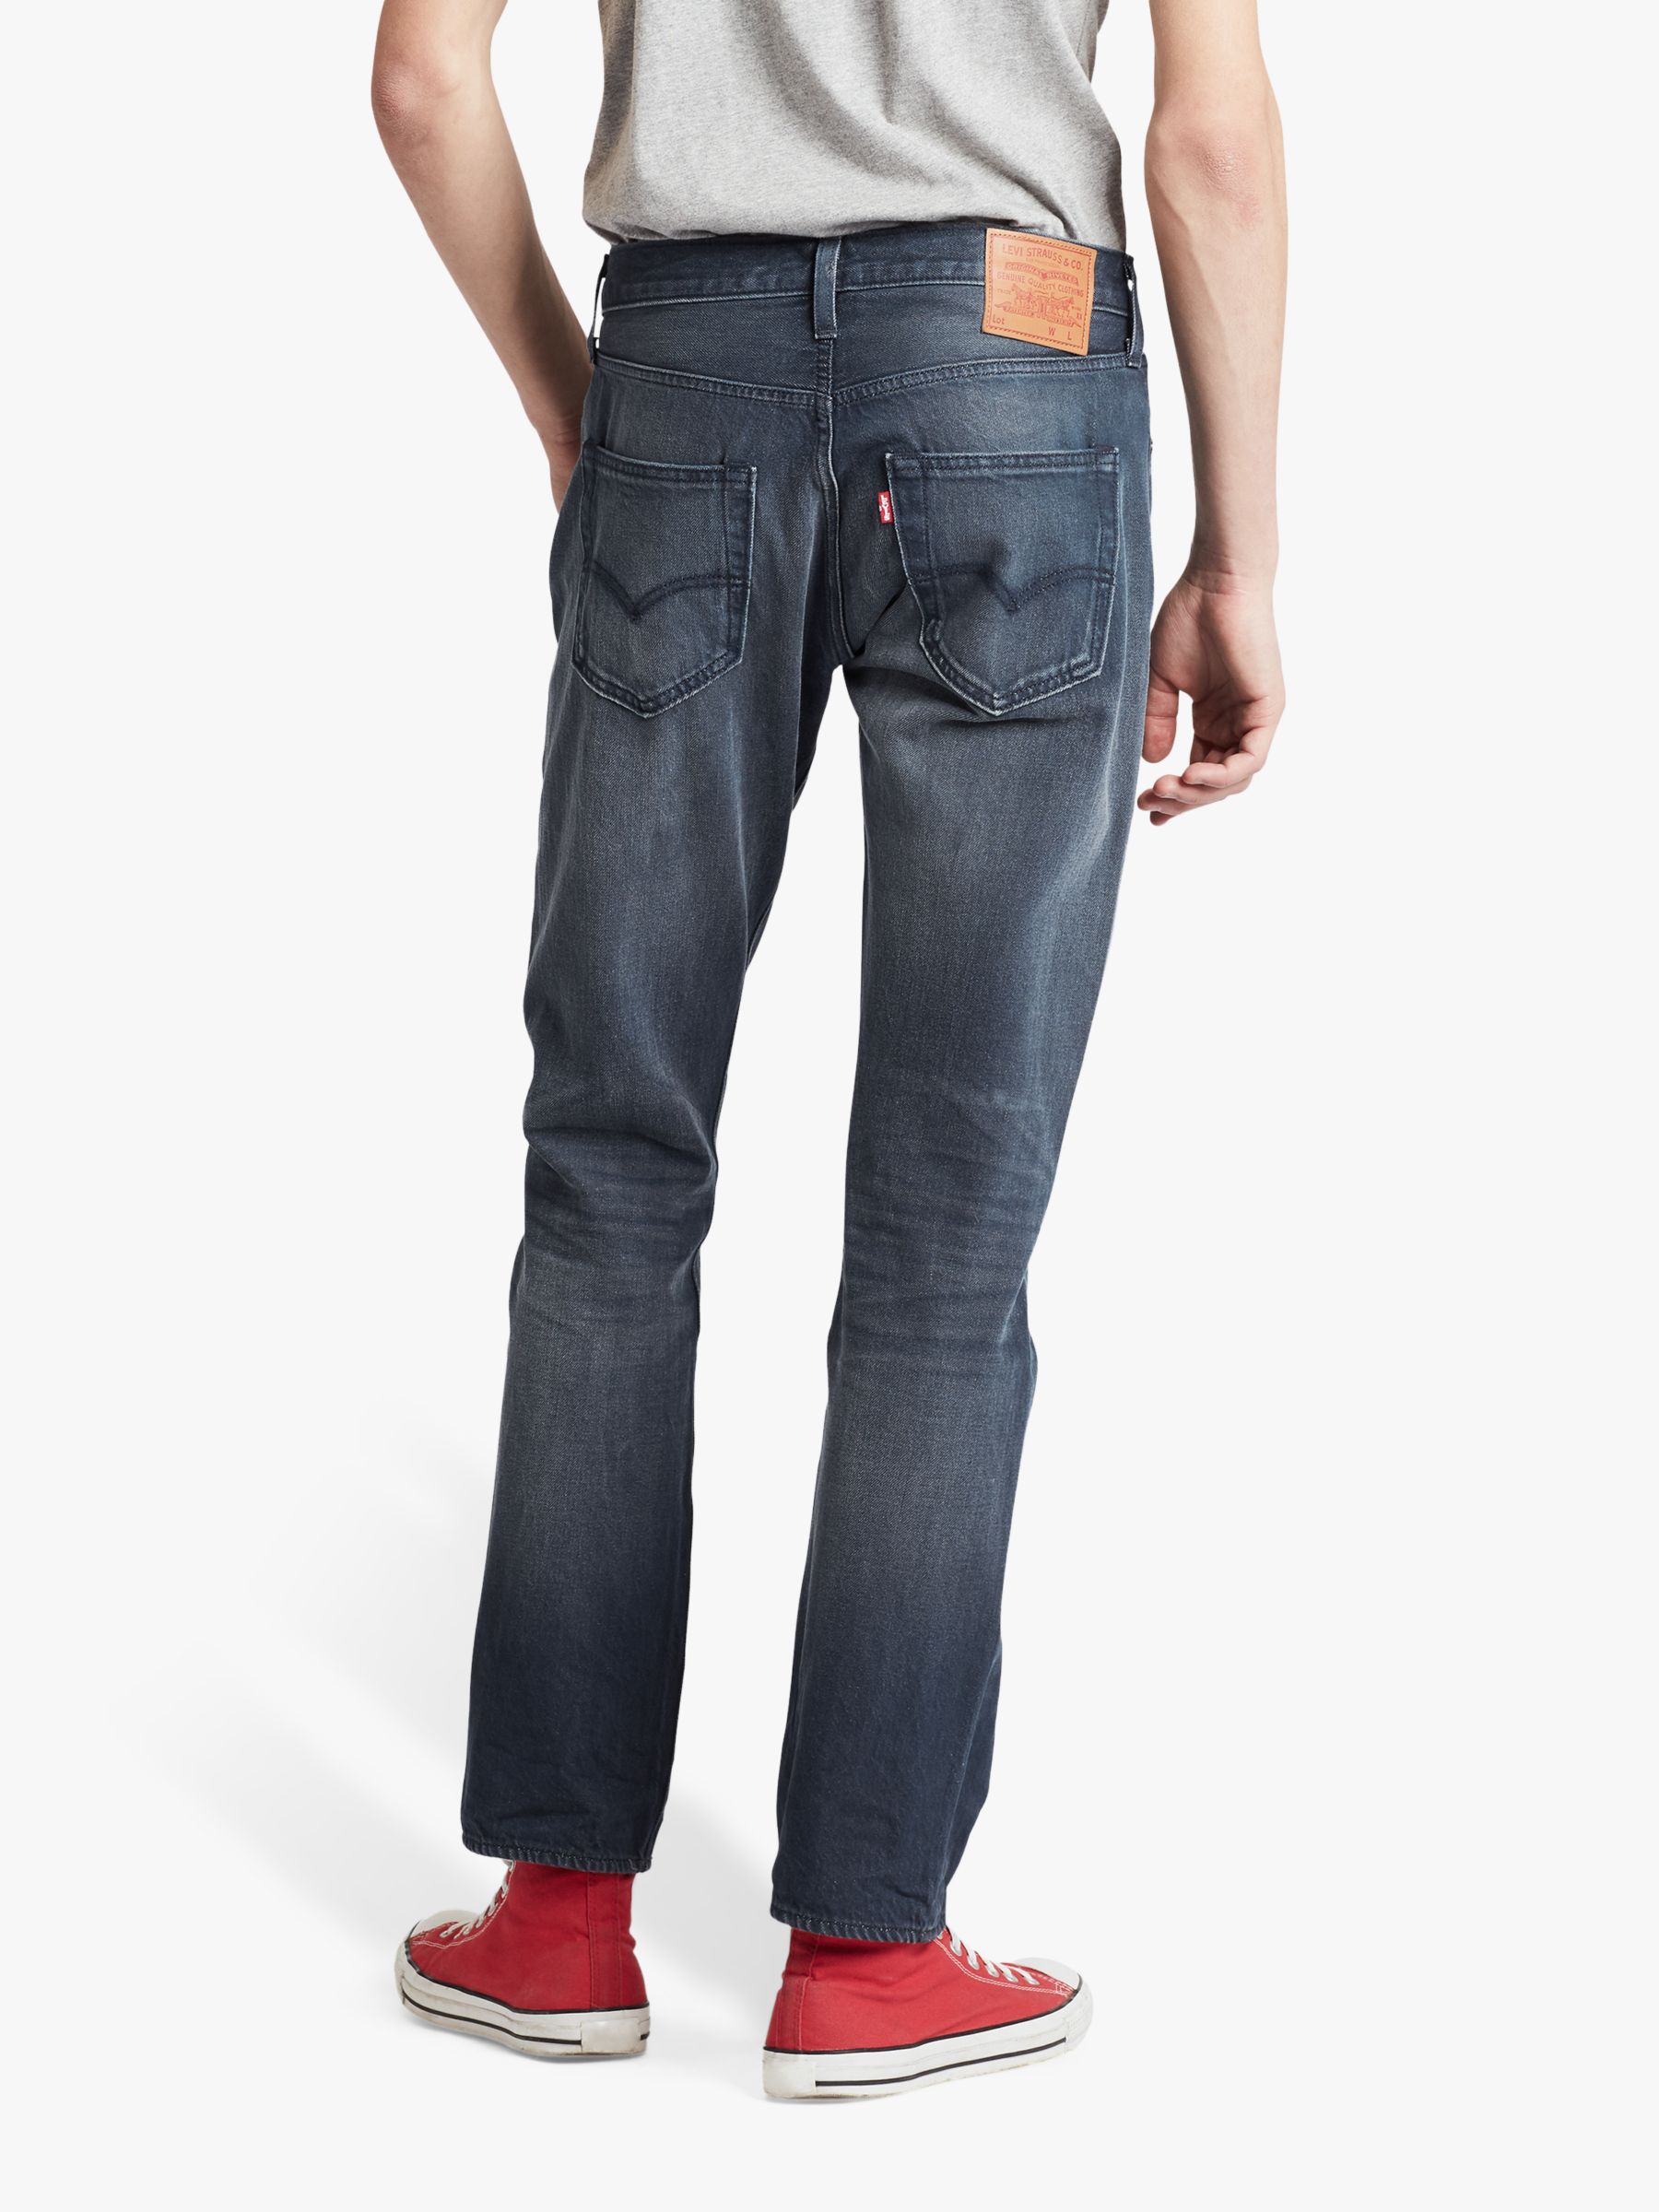 Levi's 501 Original Slim Fit Jeans, Space Money